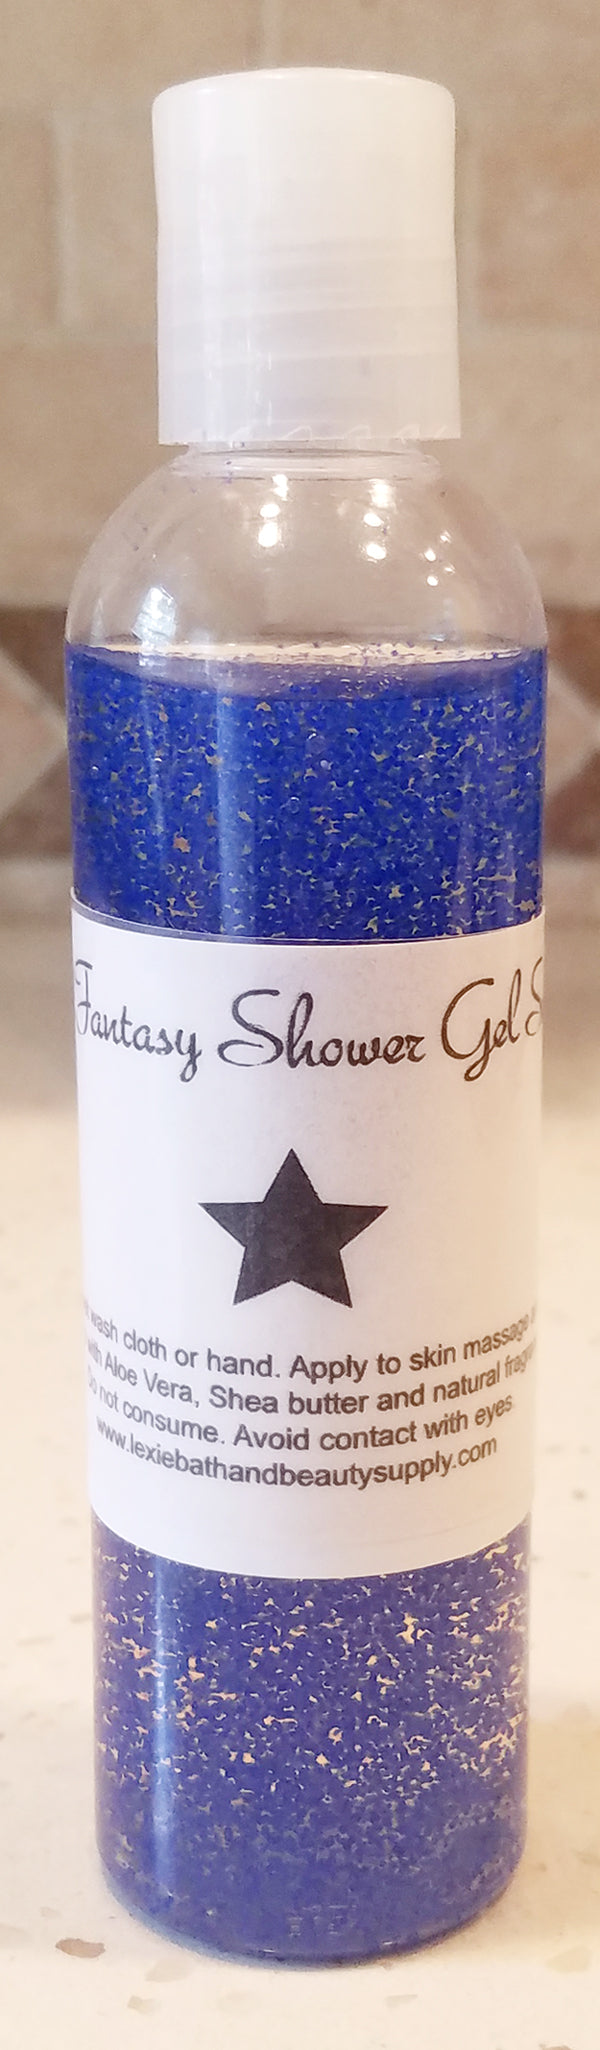 Lexie Fantasy Shower Gel Scrub - Lexie Bath and Beauty Supply